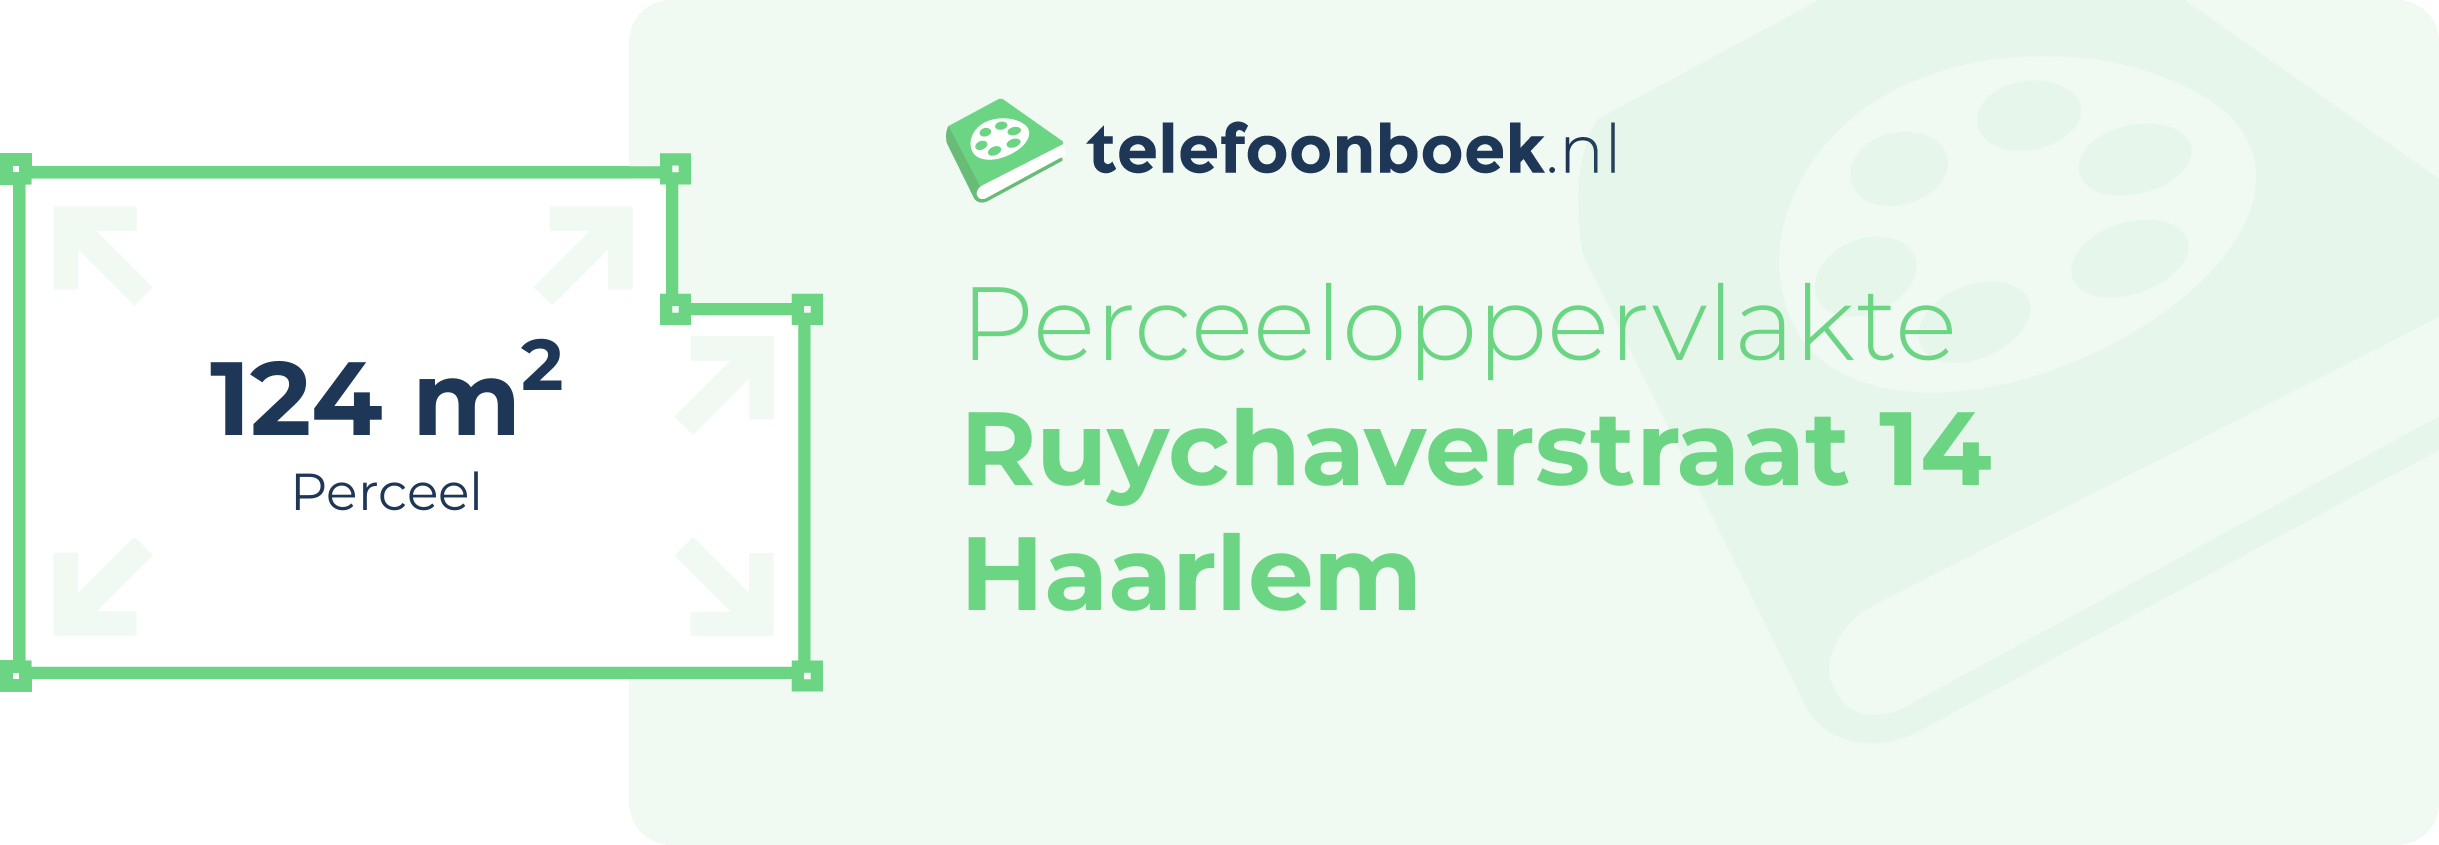 Perceeloppervlakte Ruychaverstraat 14 Haarlem